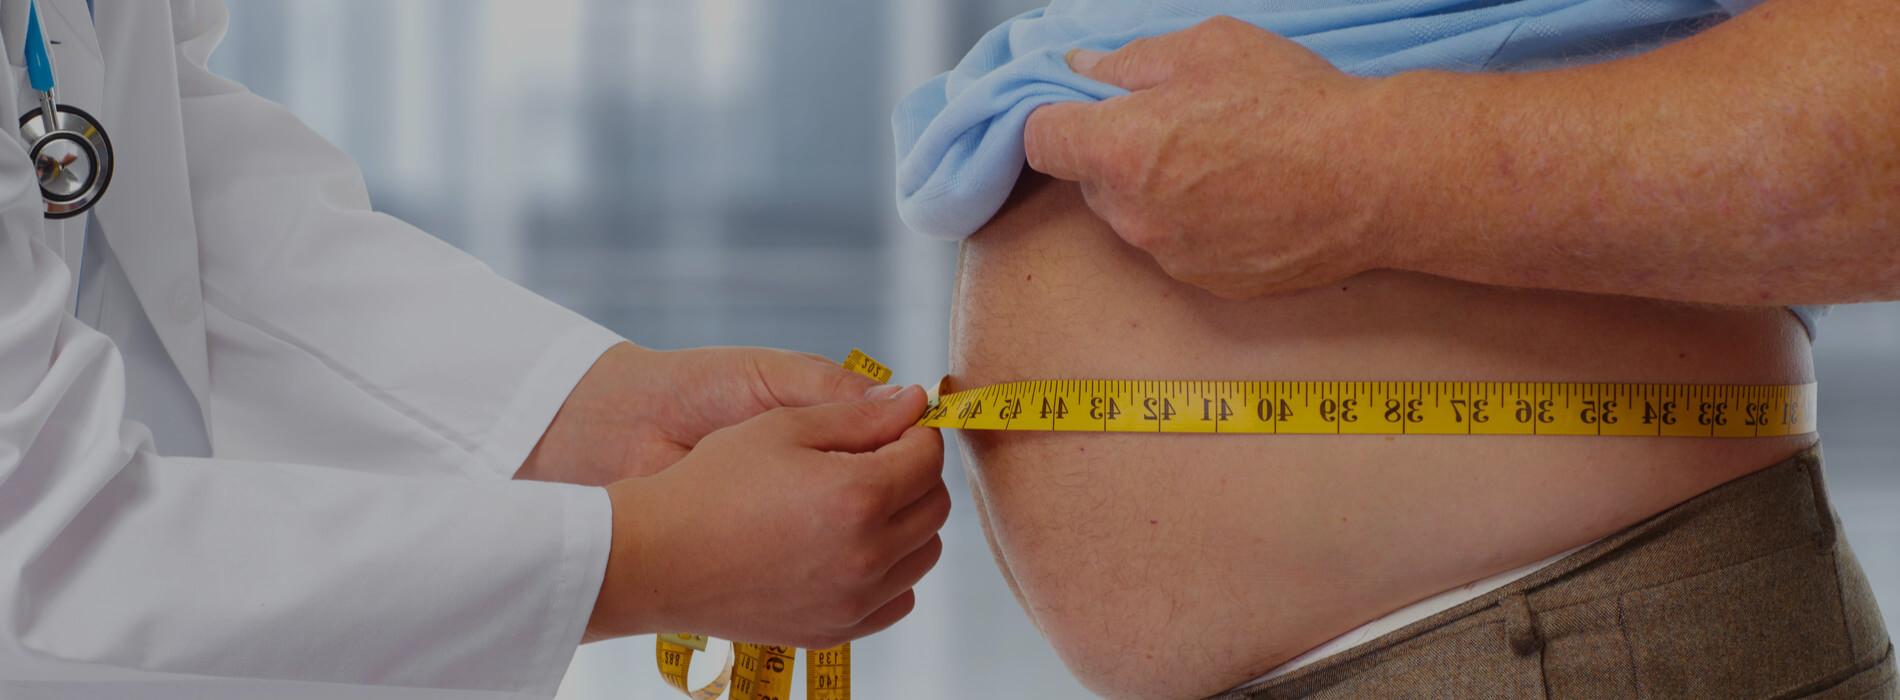 Gen otyłości FTO - genetyczna przyczyna otyłości